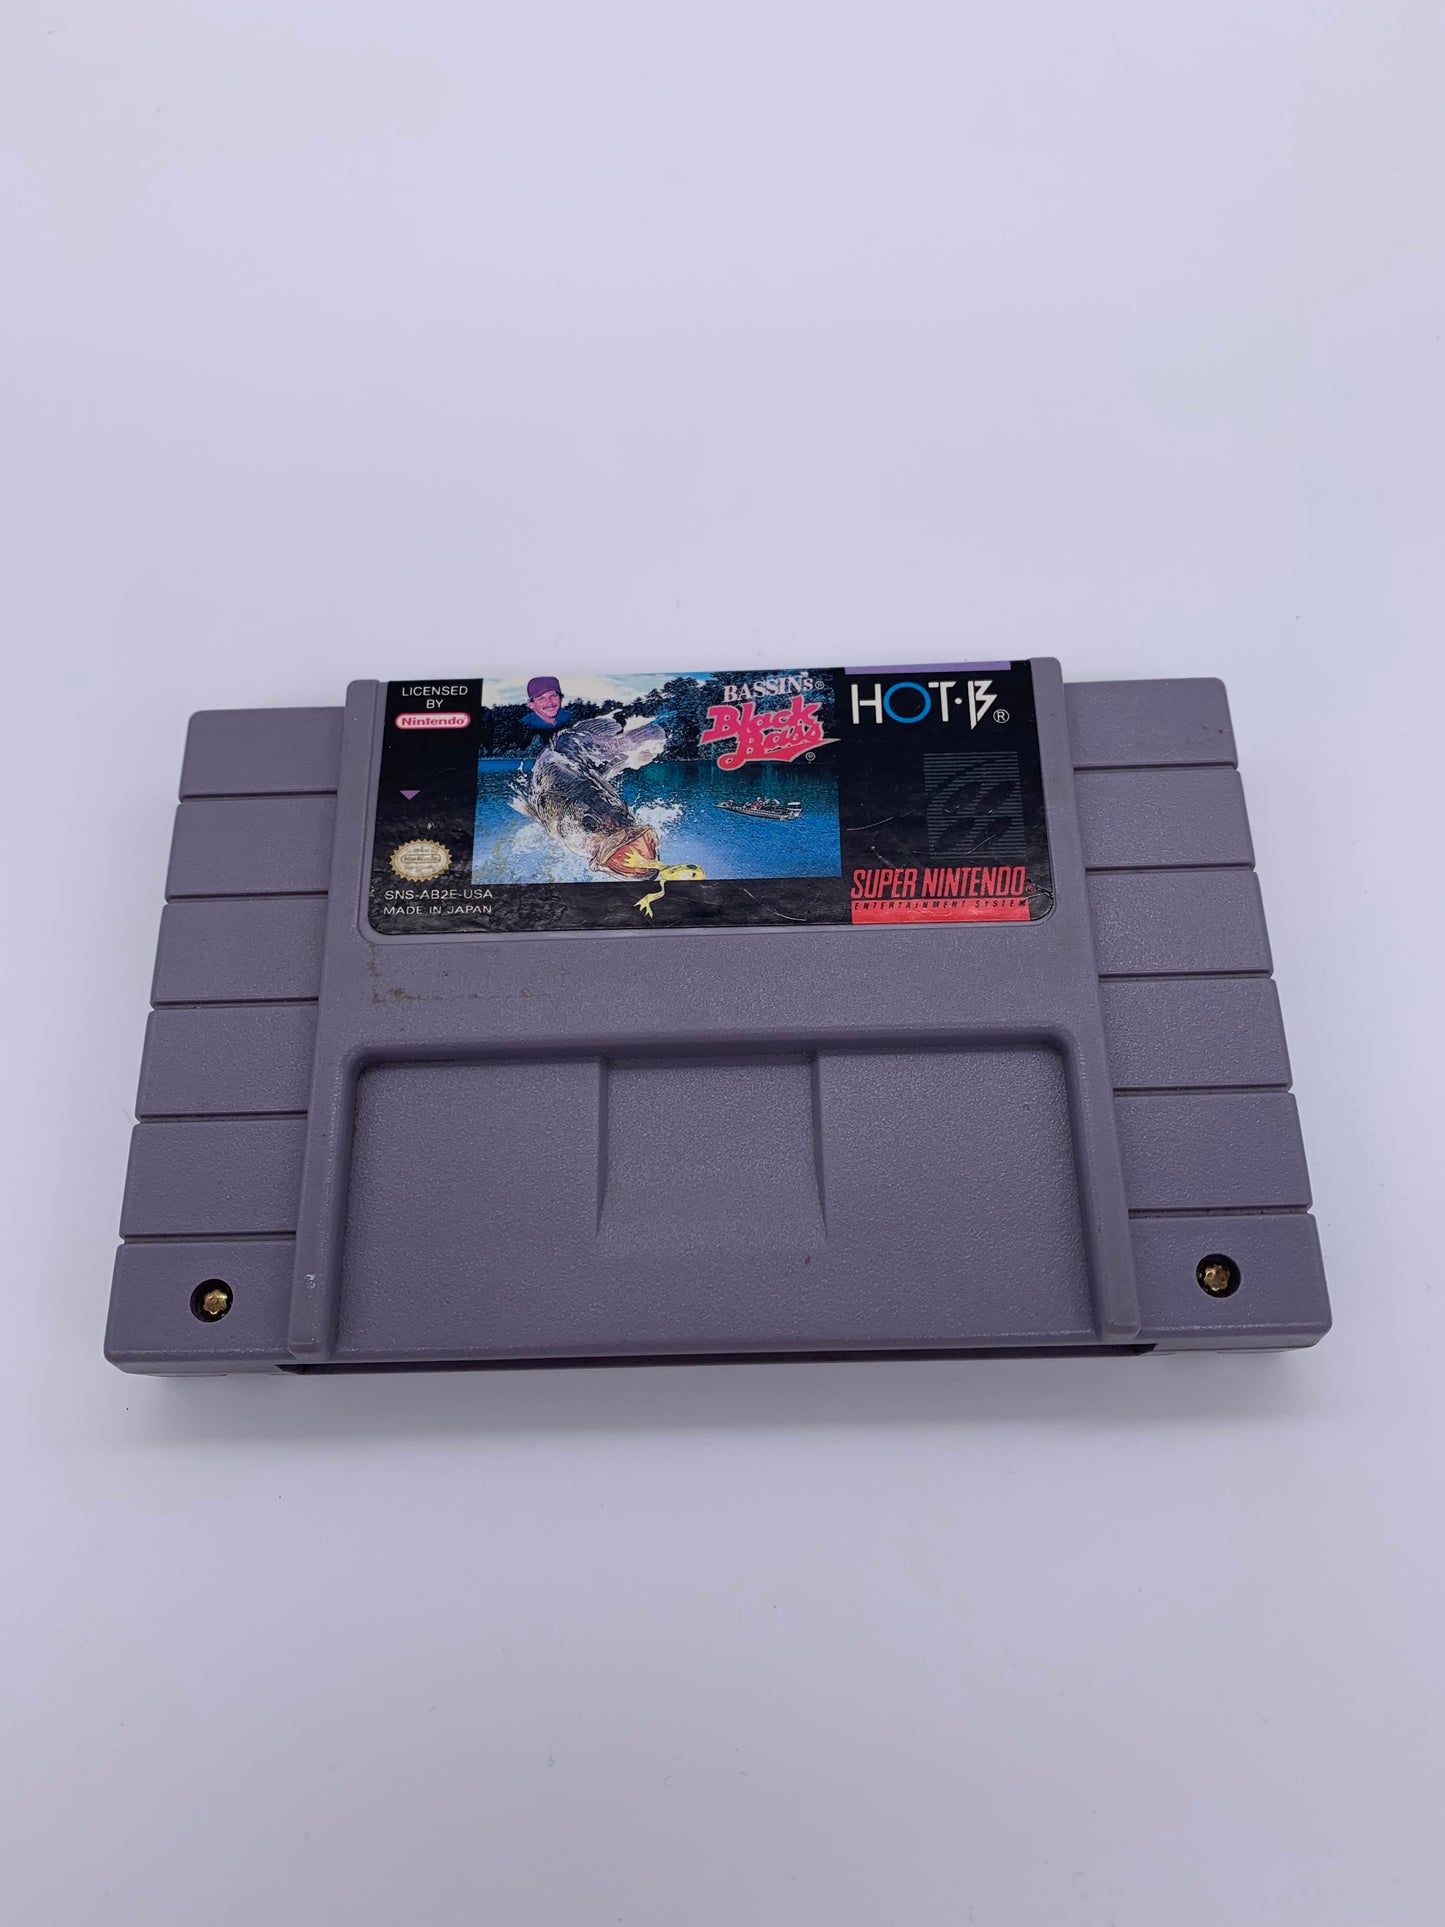 PiXEL-RETRO.COM : SUPER NINTENDO NES (SNES) GAME NTSC BASSIN'S BLACK BASS